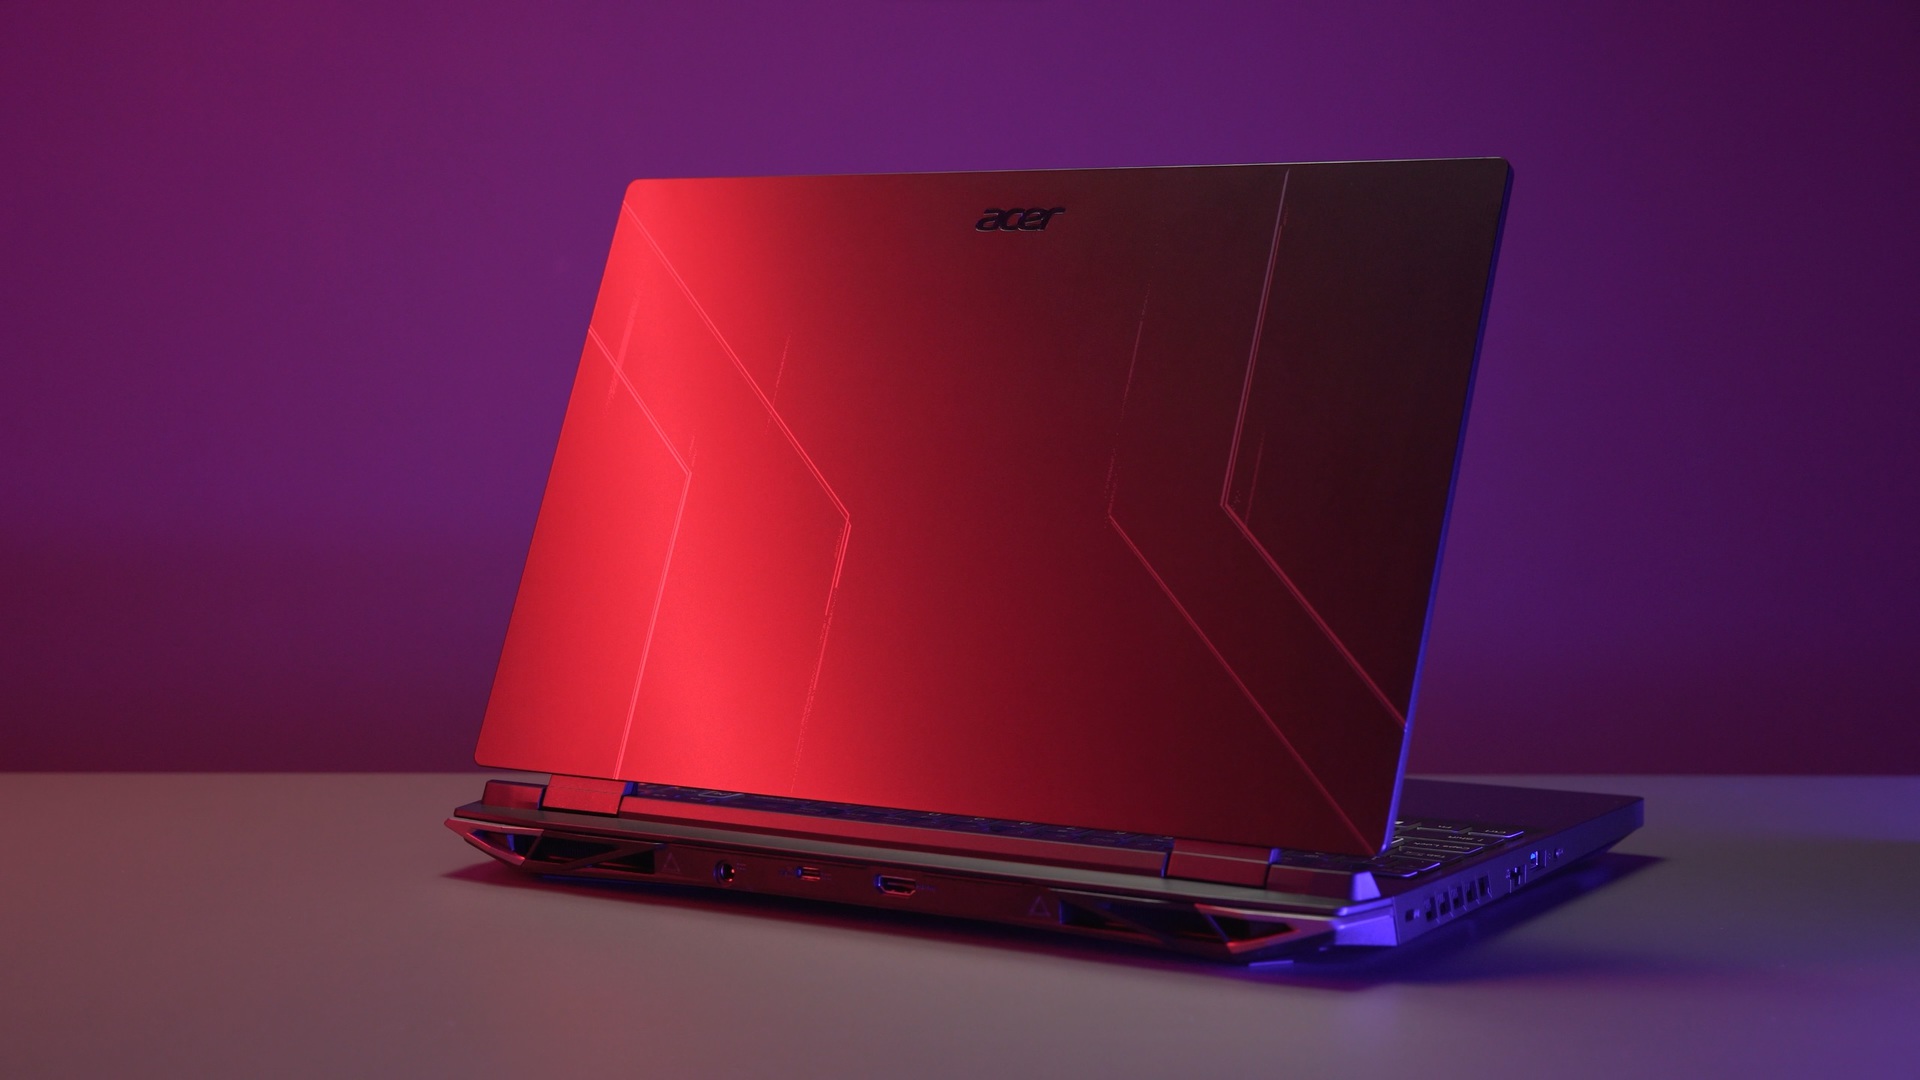 Obtenga una caída récord de precio de $ 350 en la computadora portátil para juegos Acer Nitro 5